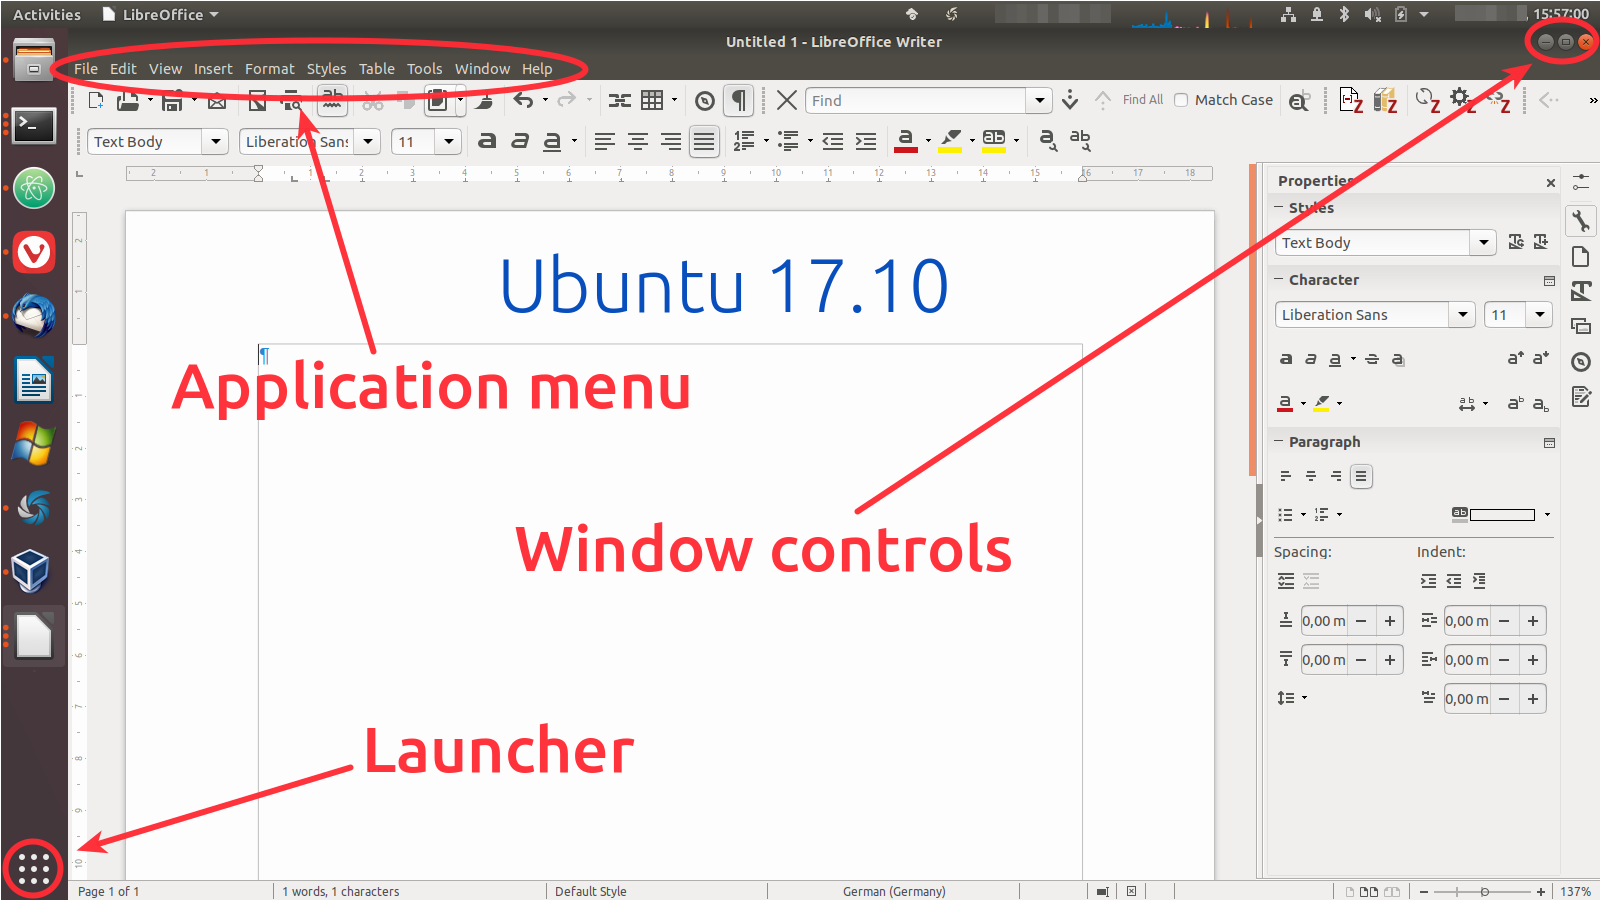 Controls in Ubuntu 17.10